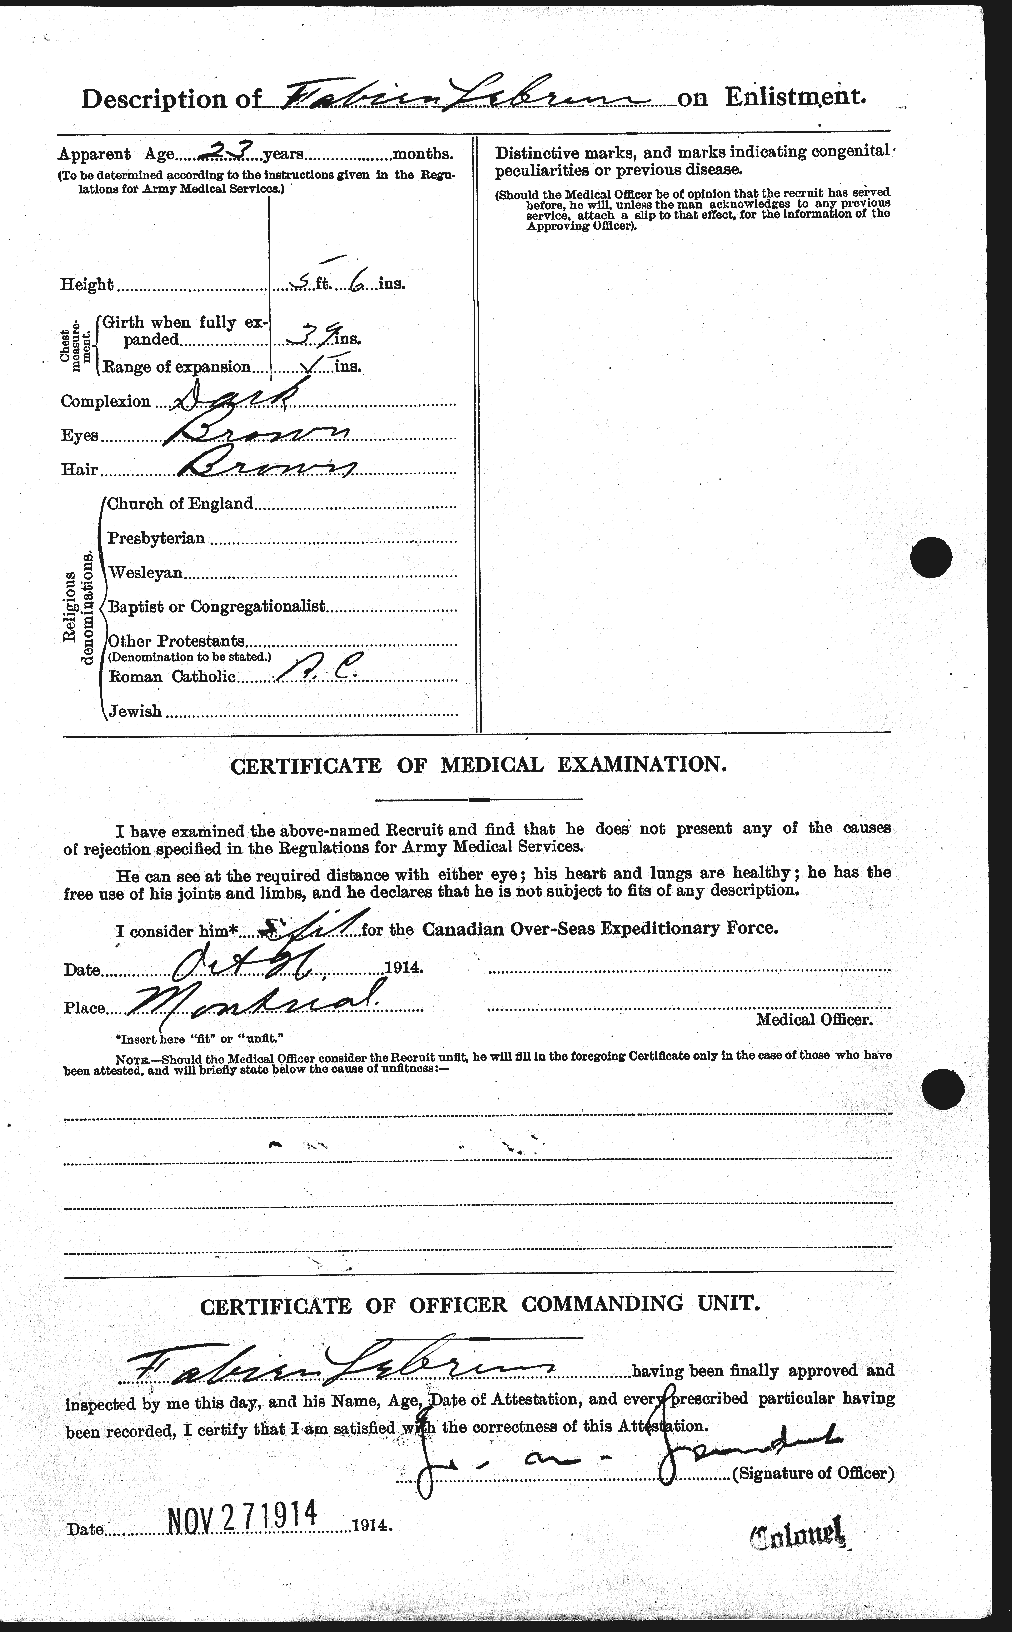 Dossiers du Personnel de la Première Guerre mondiale - CEC 461558b